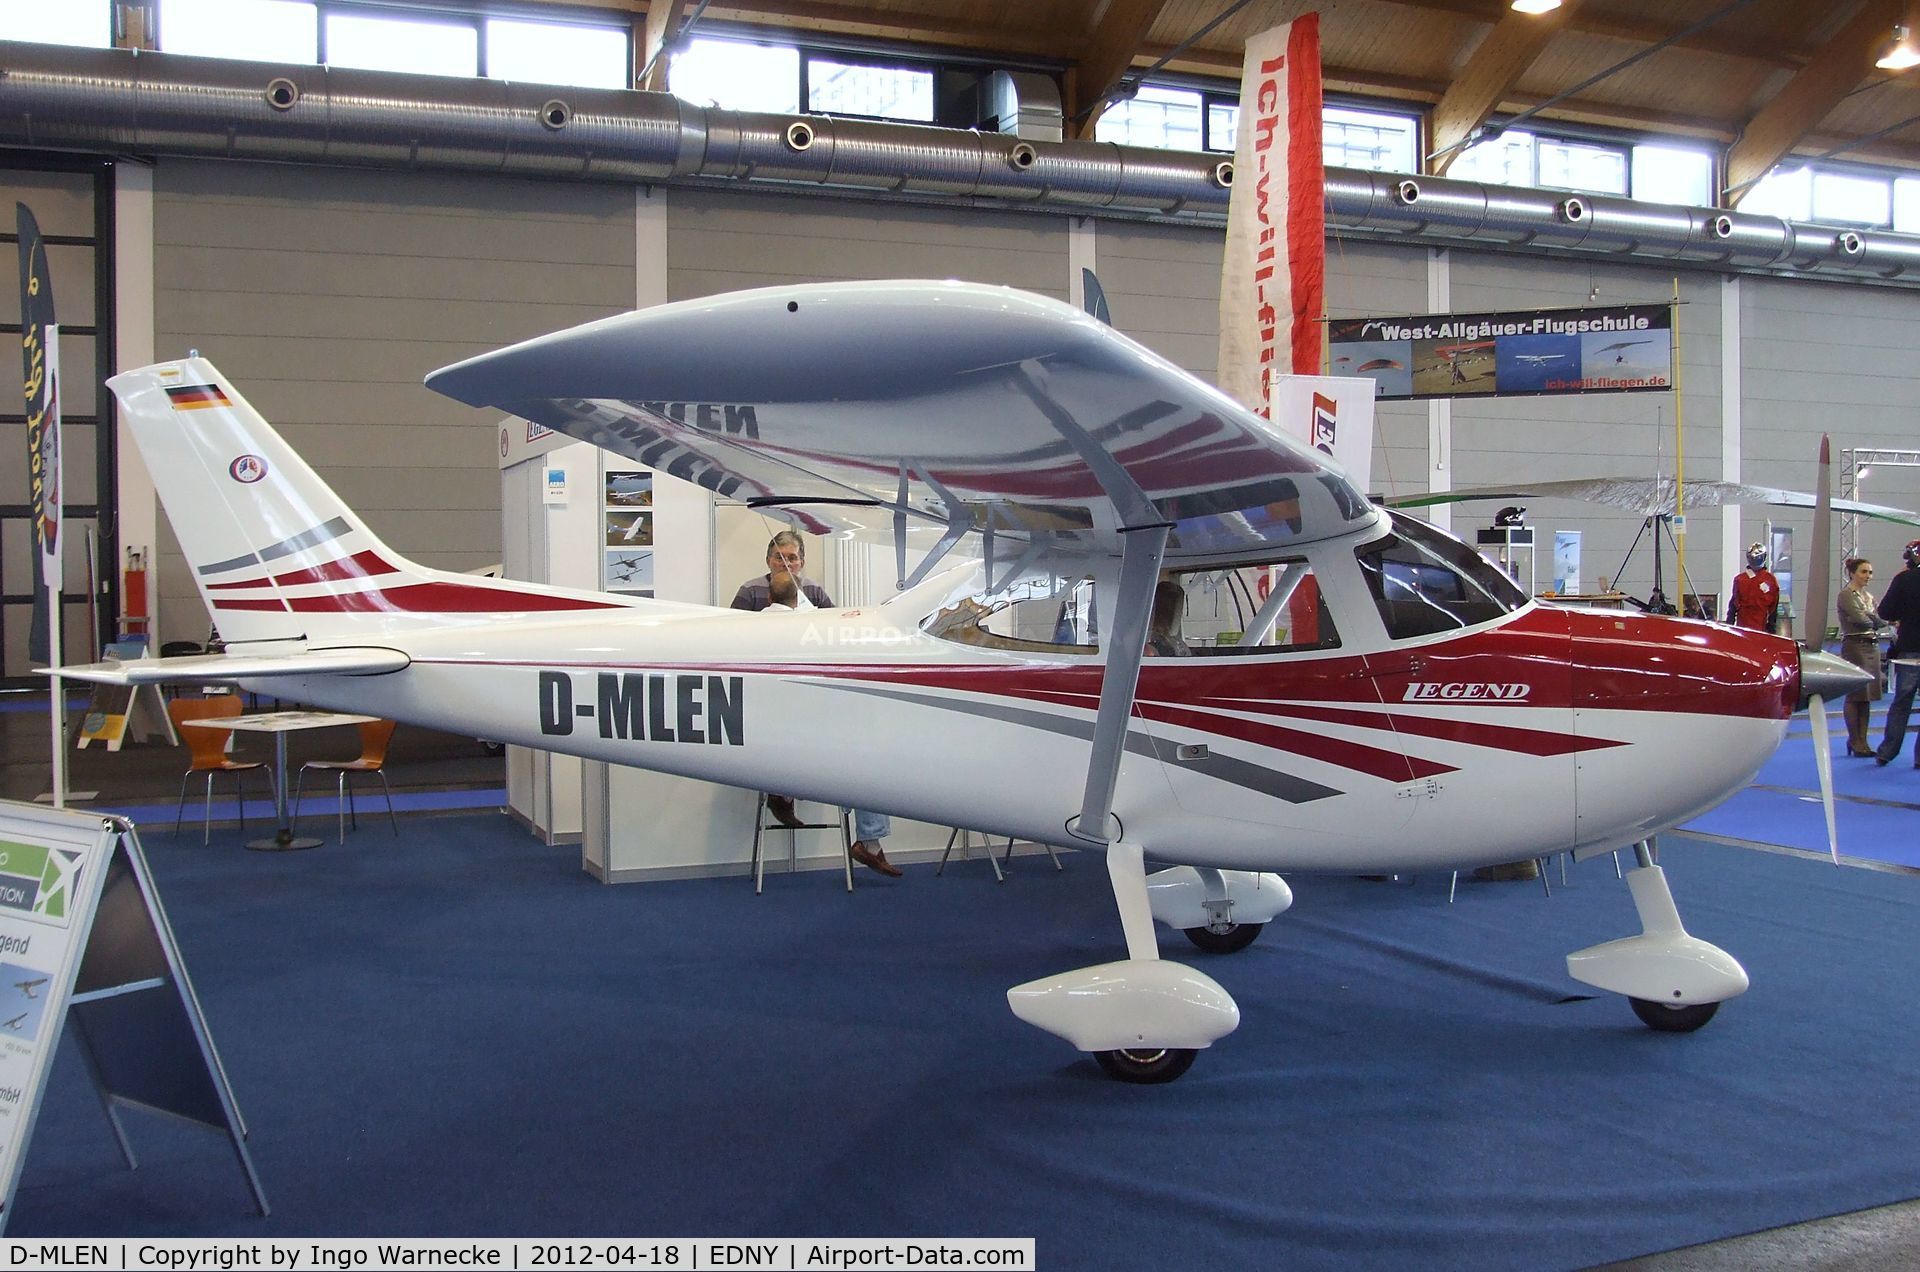 D-MLEN, Aeropilot Legend 540 C/N Not found D-MLEN, Aeropilot Legend 540 at the AERO 2012, Friedrichshafen